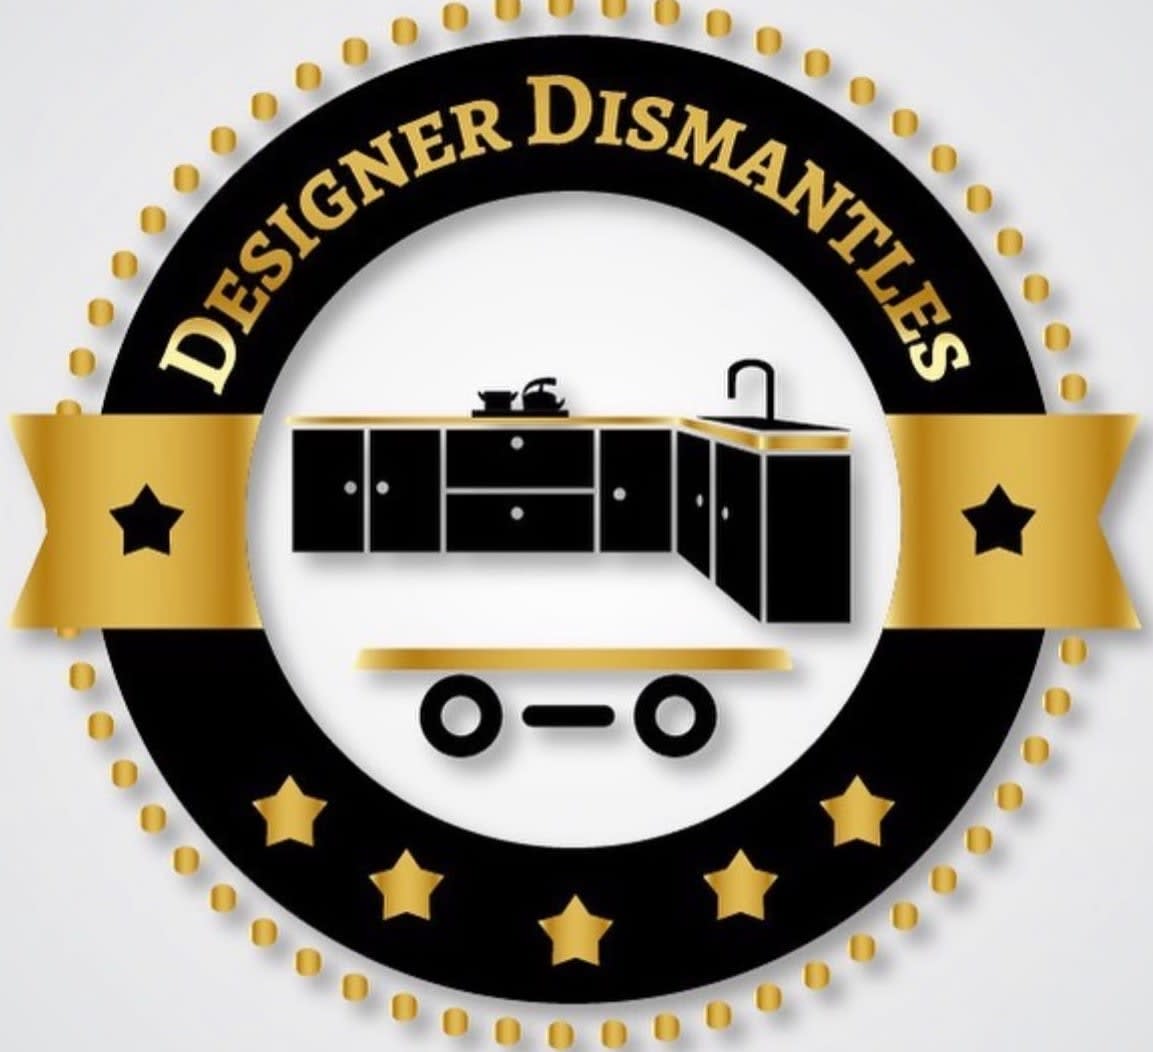 Designer Dismantles